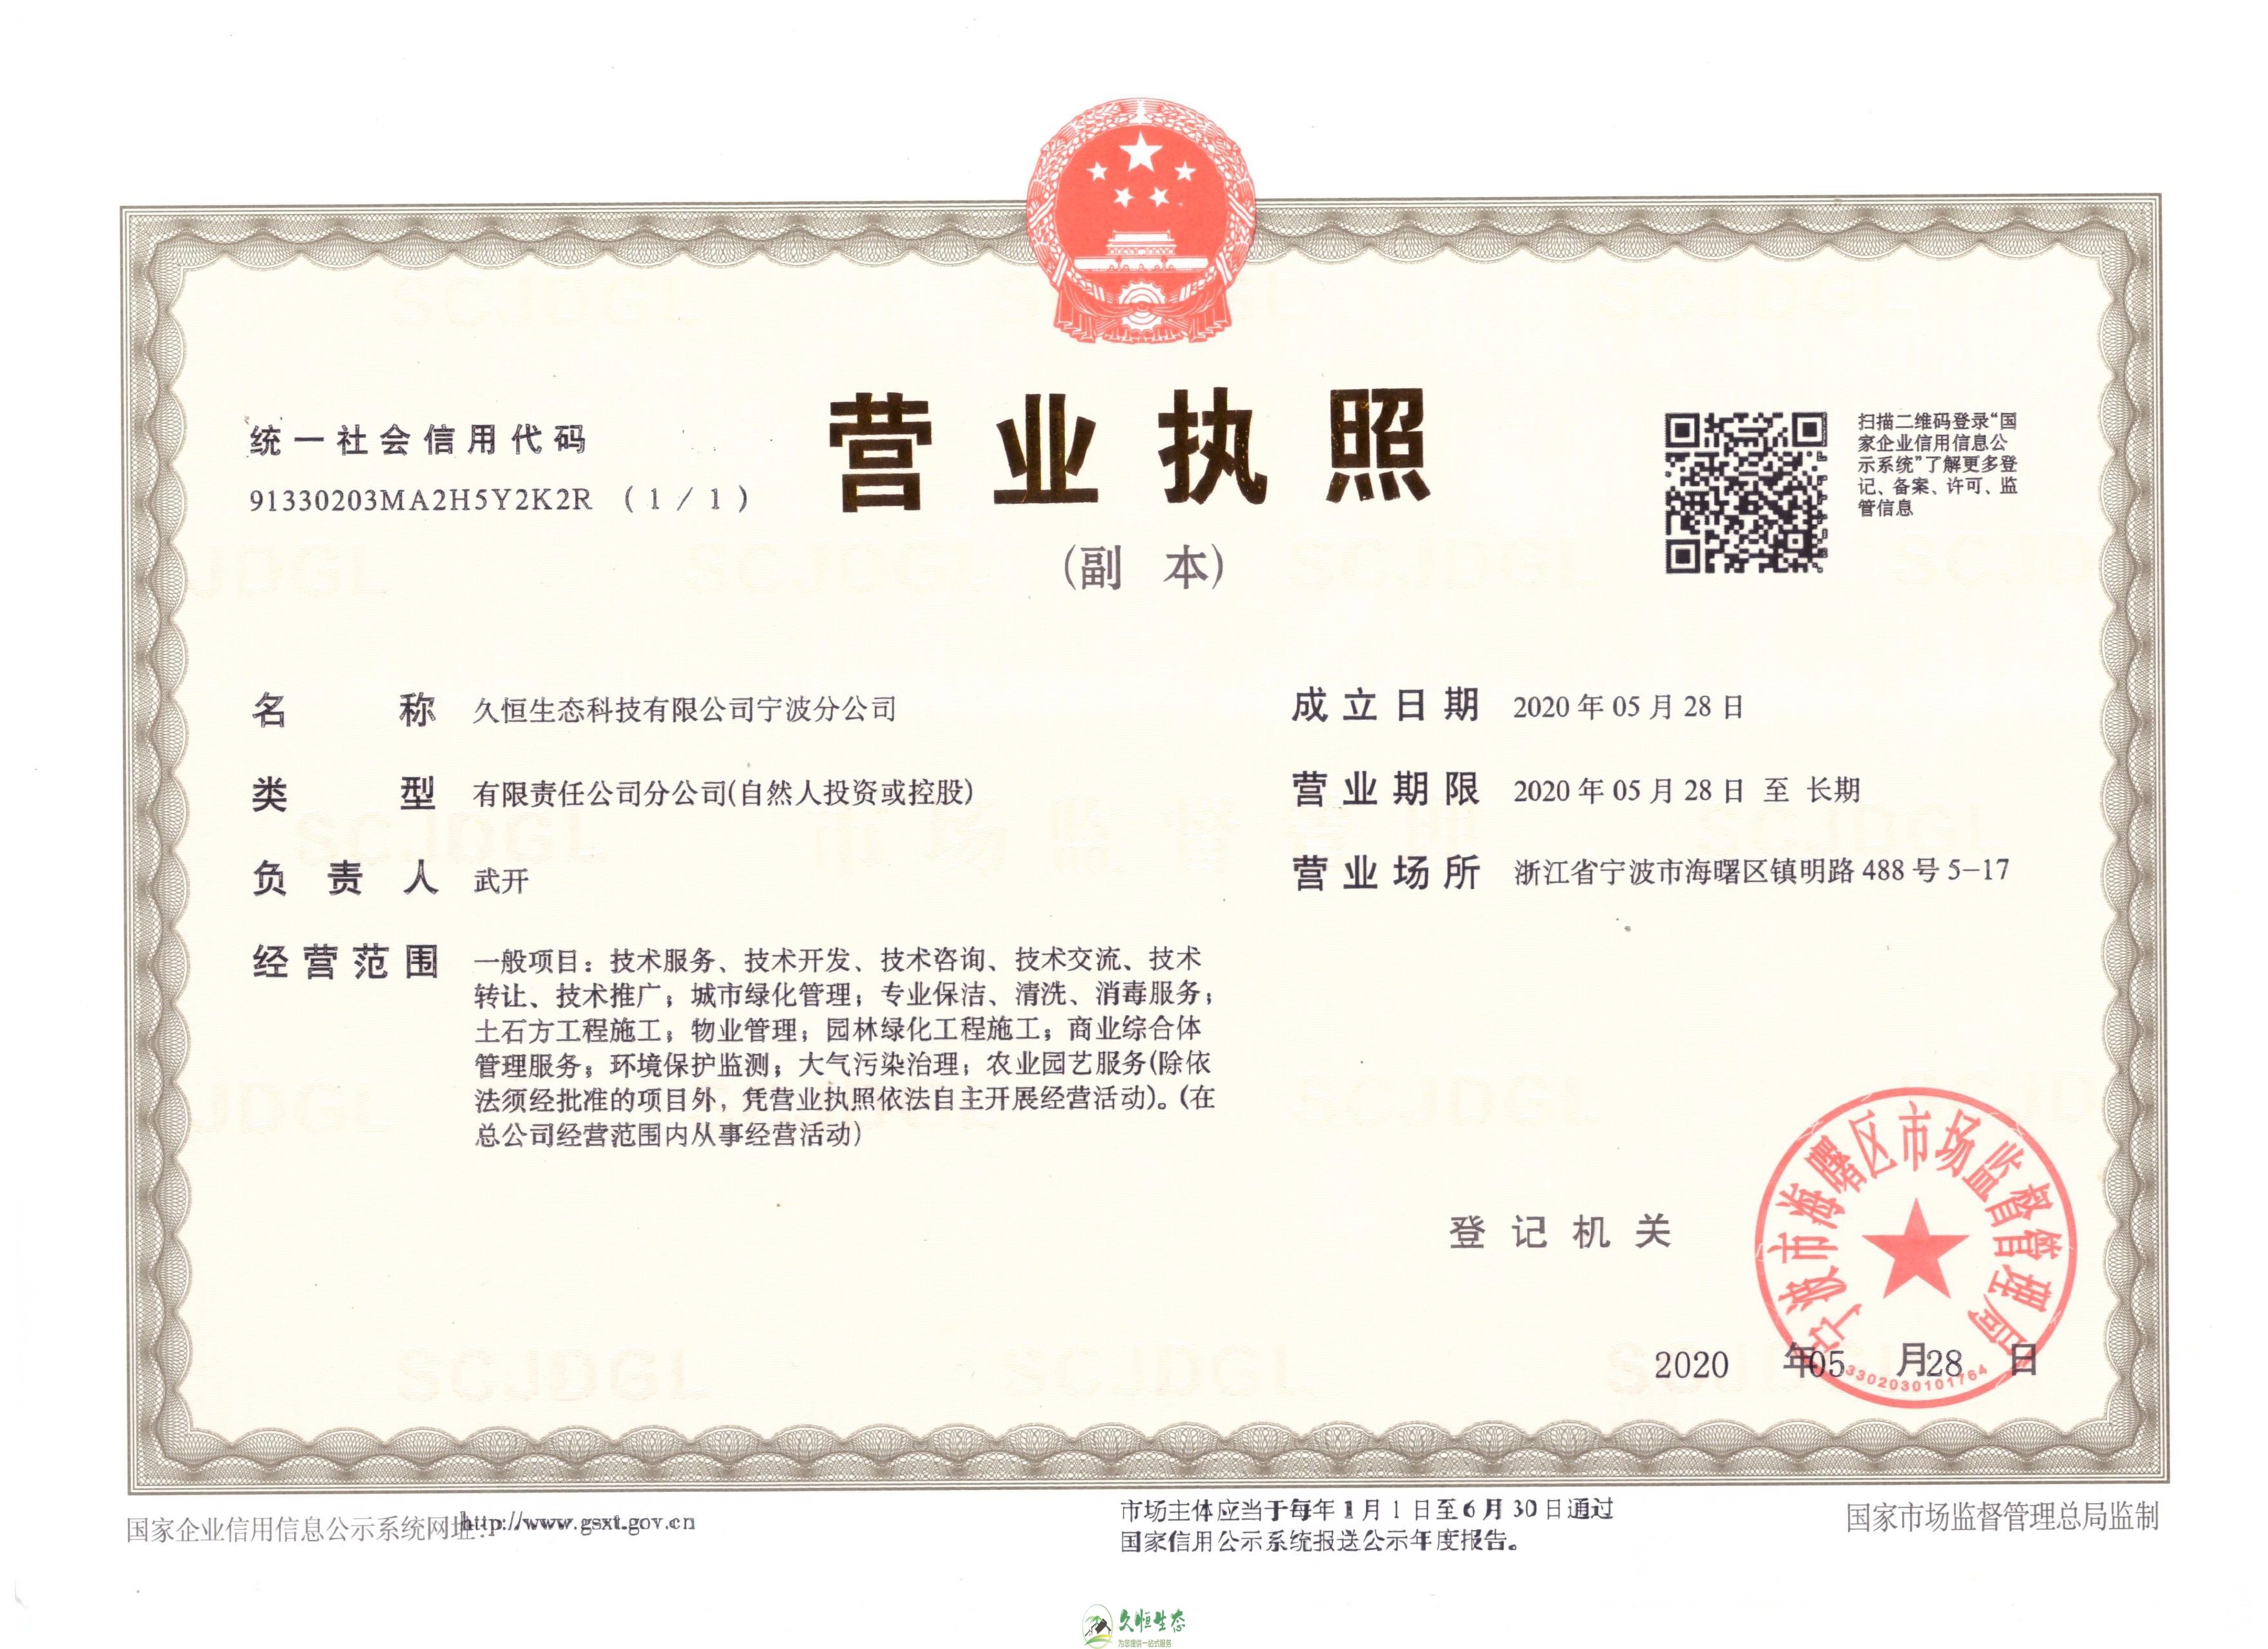 南京六合久恒生态宁波分公司2020年5月28日成立